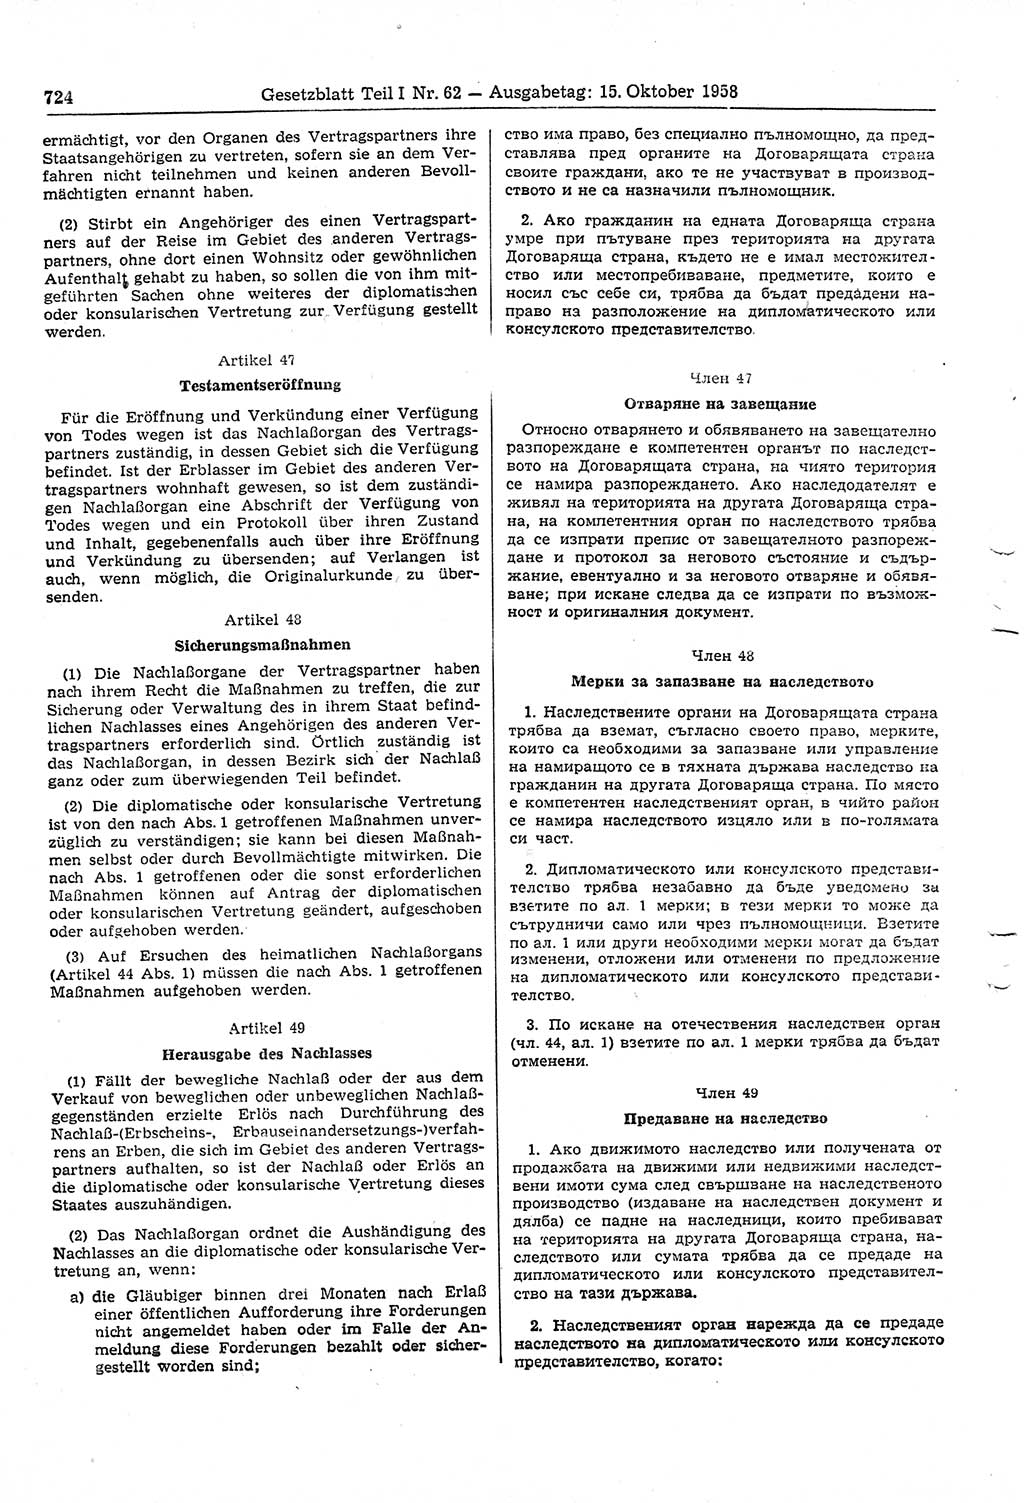 Gesetzblatt (GBl.) der Deutschen Demokratischen Republik (DDR) Teil Ⅰ 1958, Seite 724 (GBl. DDR Ⅰ 1958, S. 724)